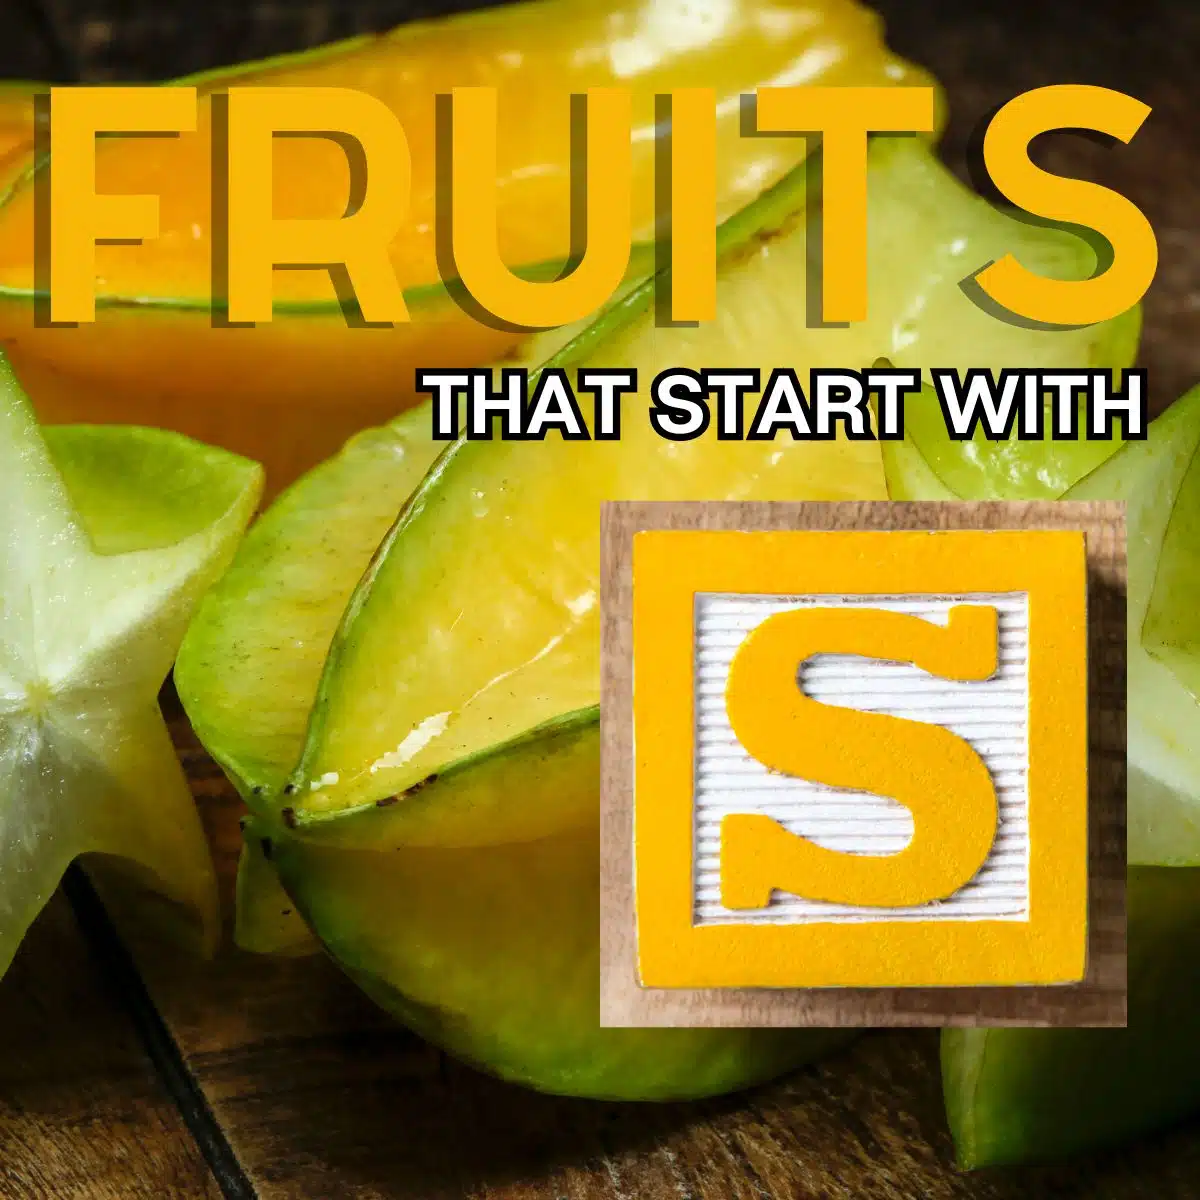 스타프루트(starfruit)를 특징으로 하는 문자 S로 시작하는 과일의 정사각형 이미지입니다.